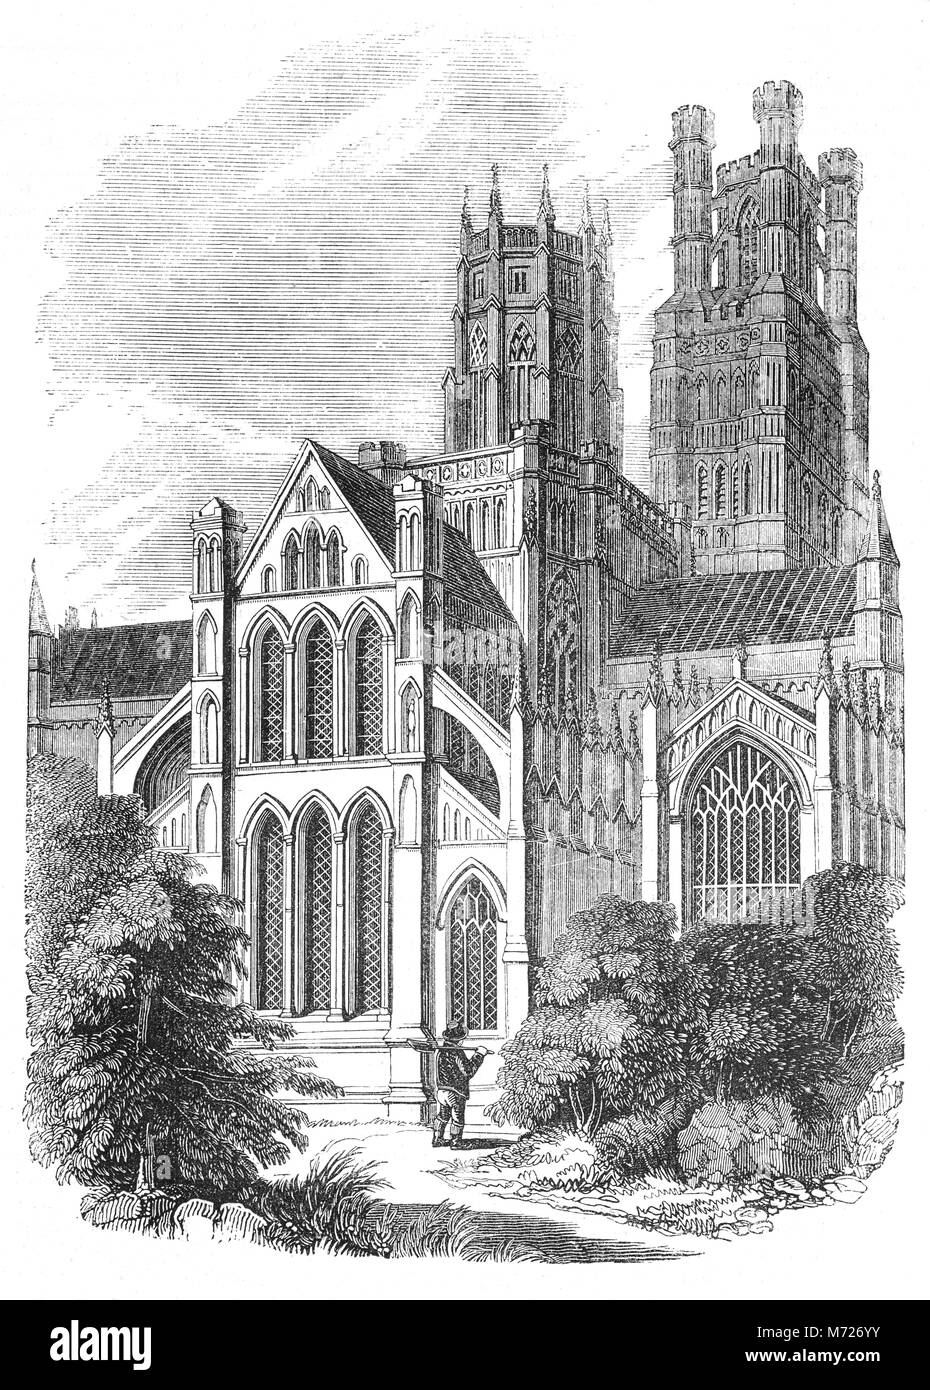 Cathédrale d'Ely a ses origines dans AD 672 quand saint Etheldreda construit une église abbatiale. Le bâtiment actuel remonte à 1083, et il a été accordé le statut de cathédrale en 1109. Construit dans un style roman monumental, d'une exubérante, gothique sa caractéristique la plus frappante est la tour octogonale, avec au-dessus de la lanterne, qui offre un espace intérieur unique et, en même temps que la Tour Ouest, domine le paysage environnant. Ville d'Ely, Cambridgeshire, Angleterre. Banque D'Images